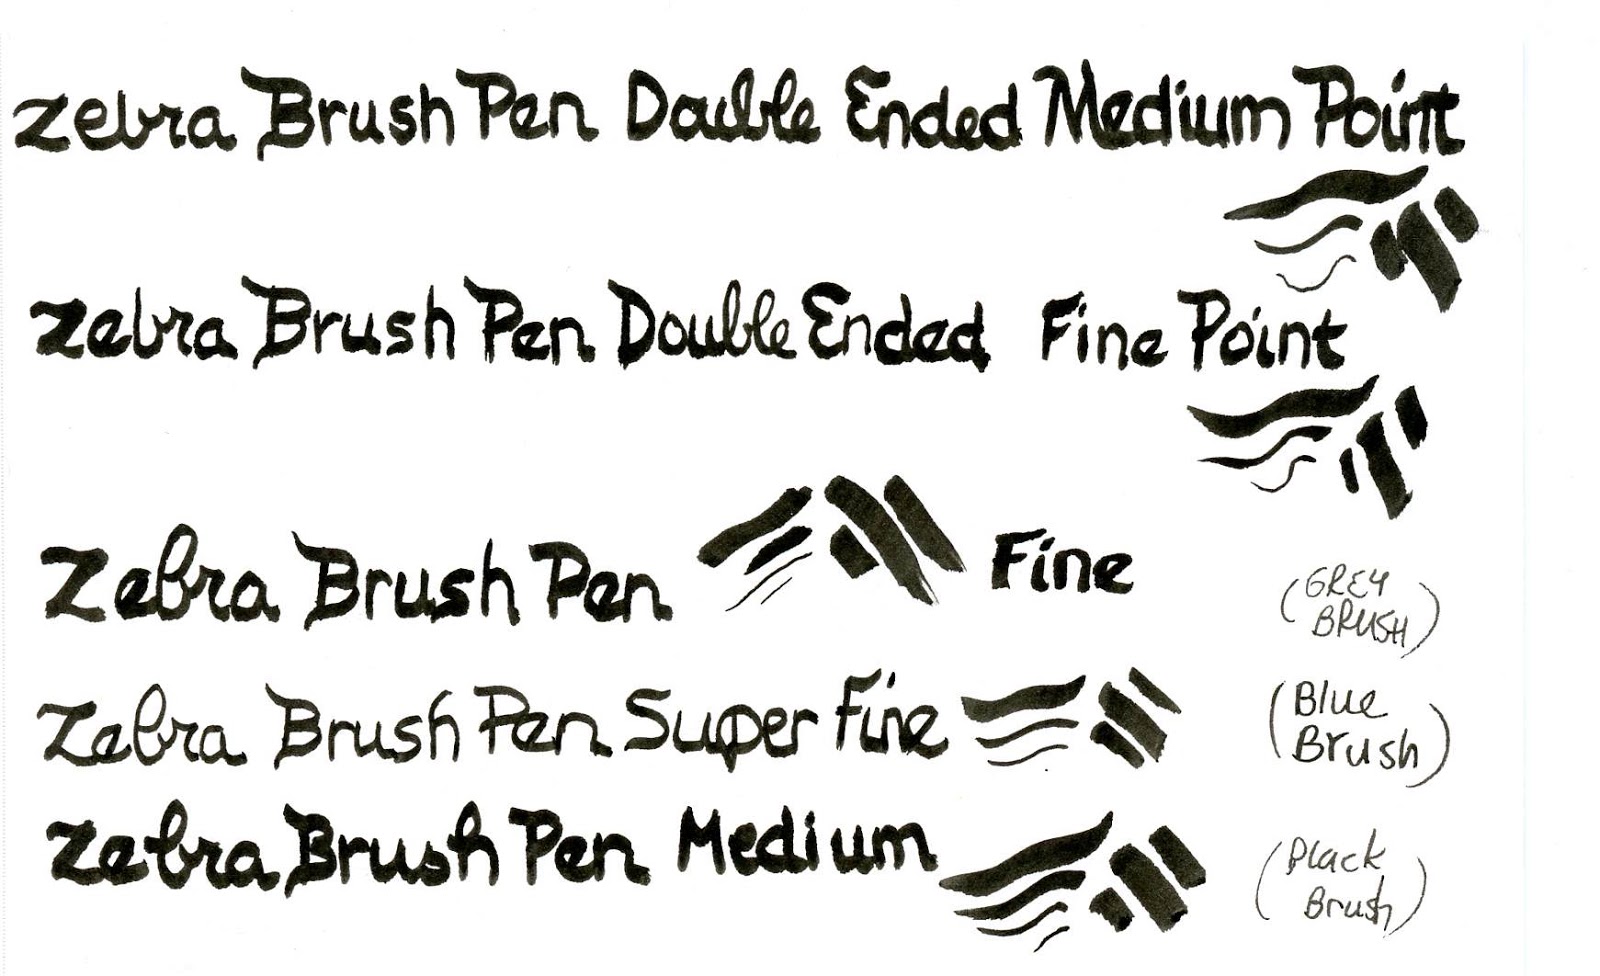 Zebra Pen Zensations Brush Pen, Fine Brush Tip, Black Water